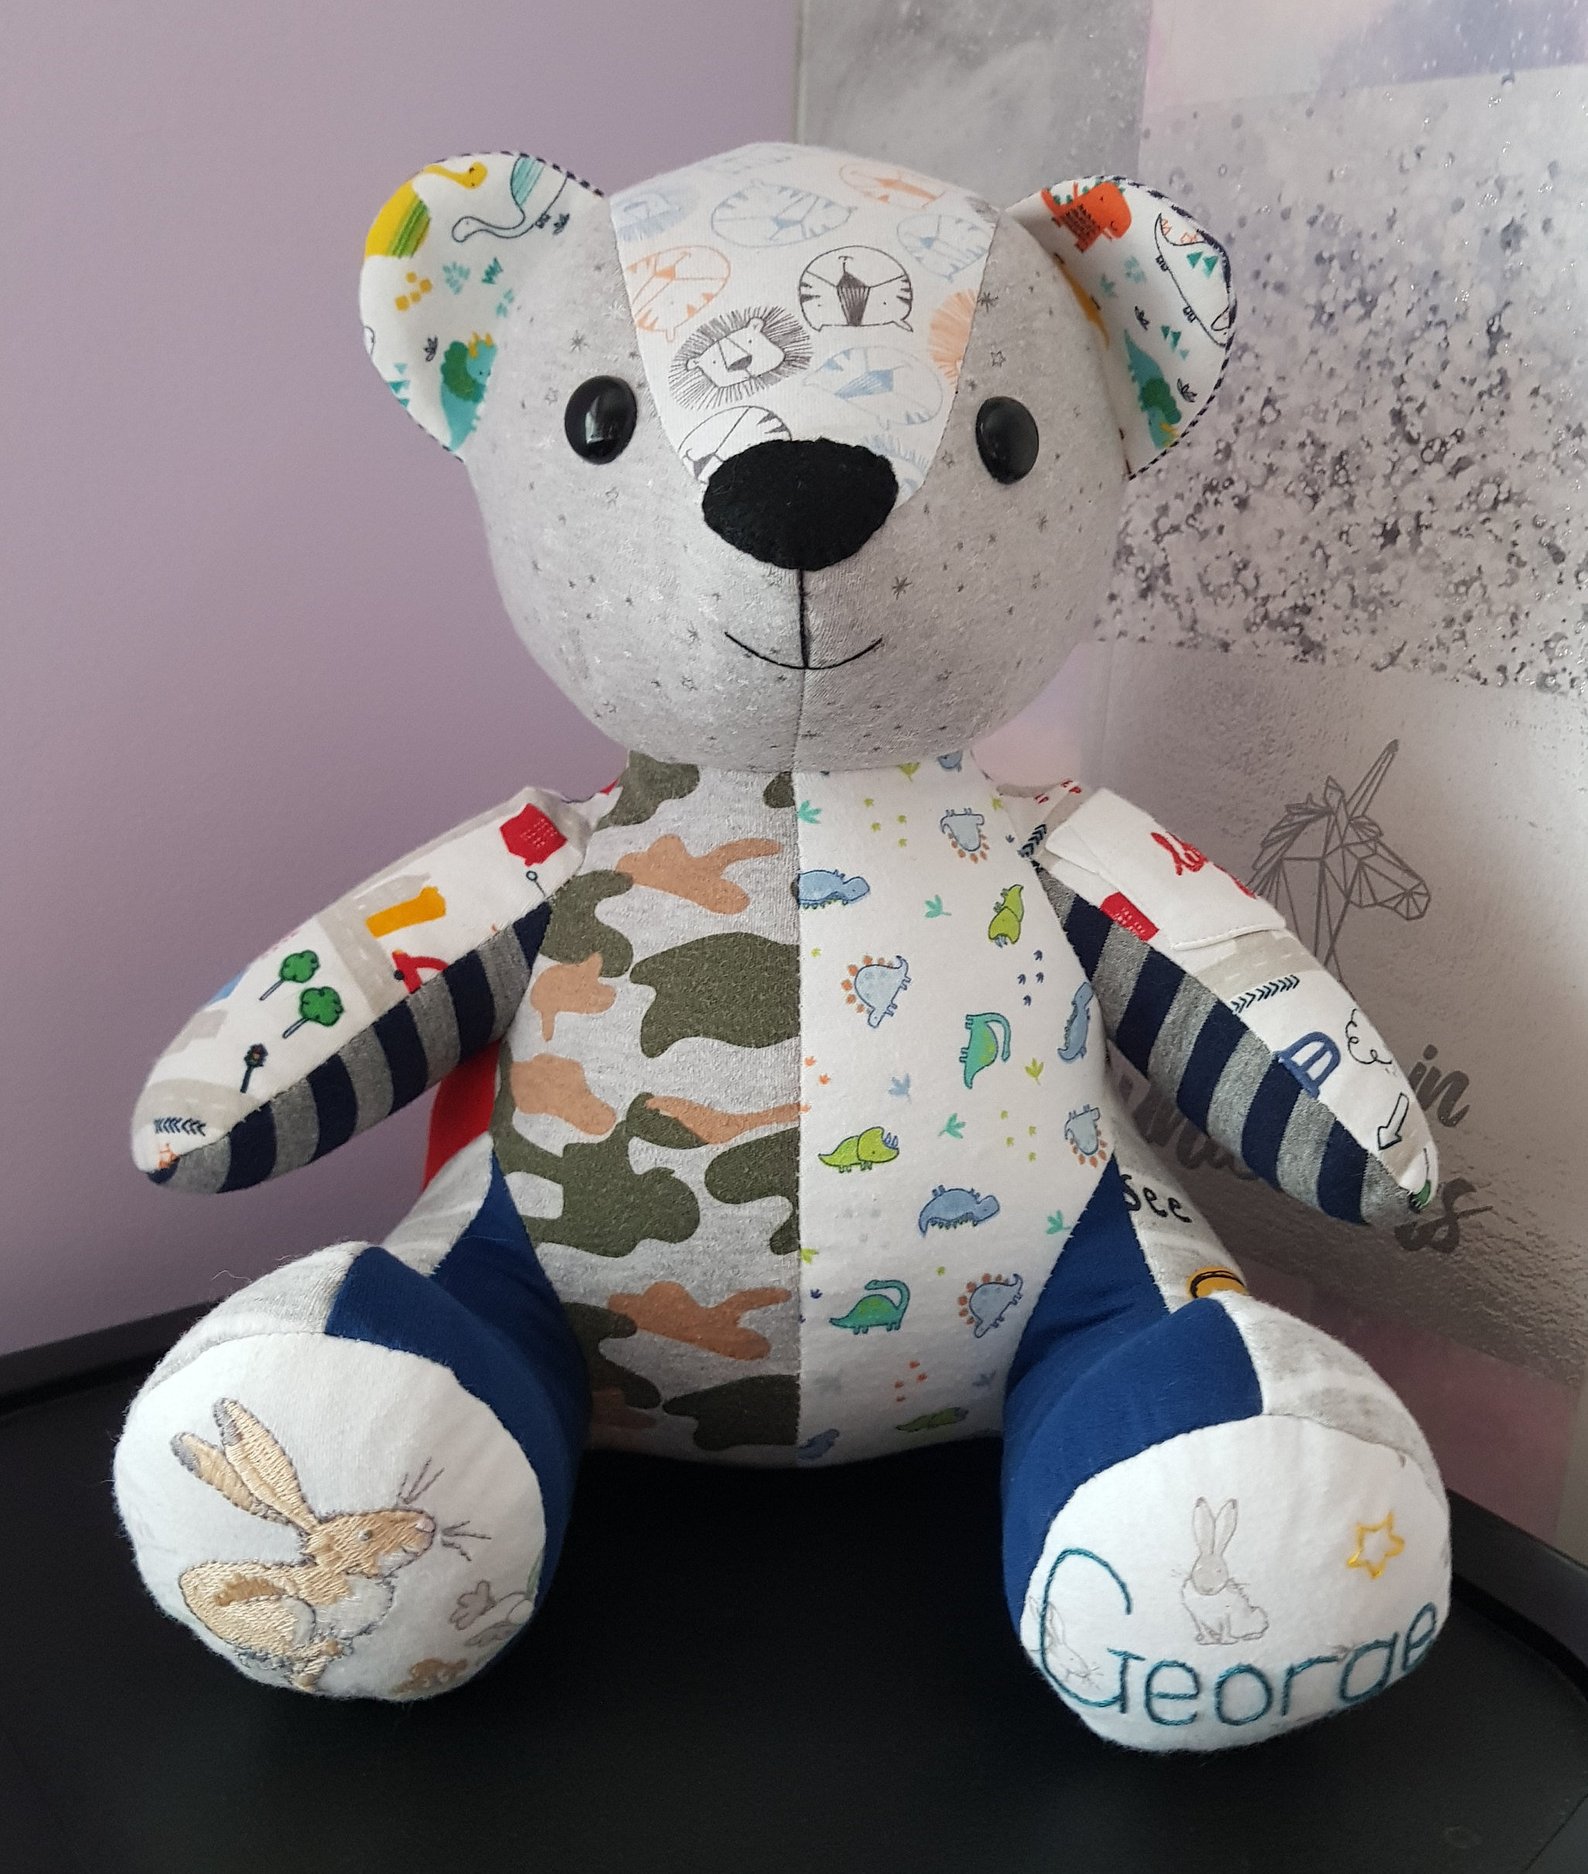 keepsake teddy bear pattern